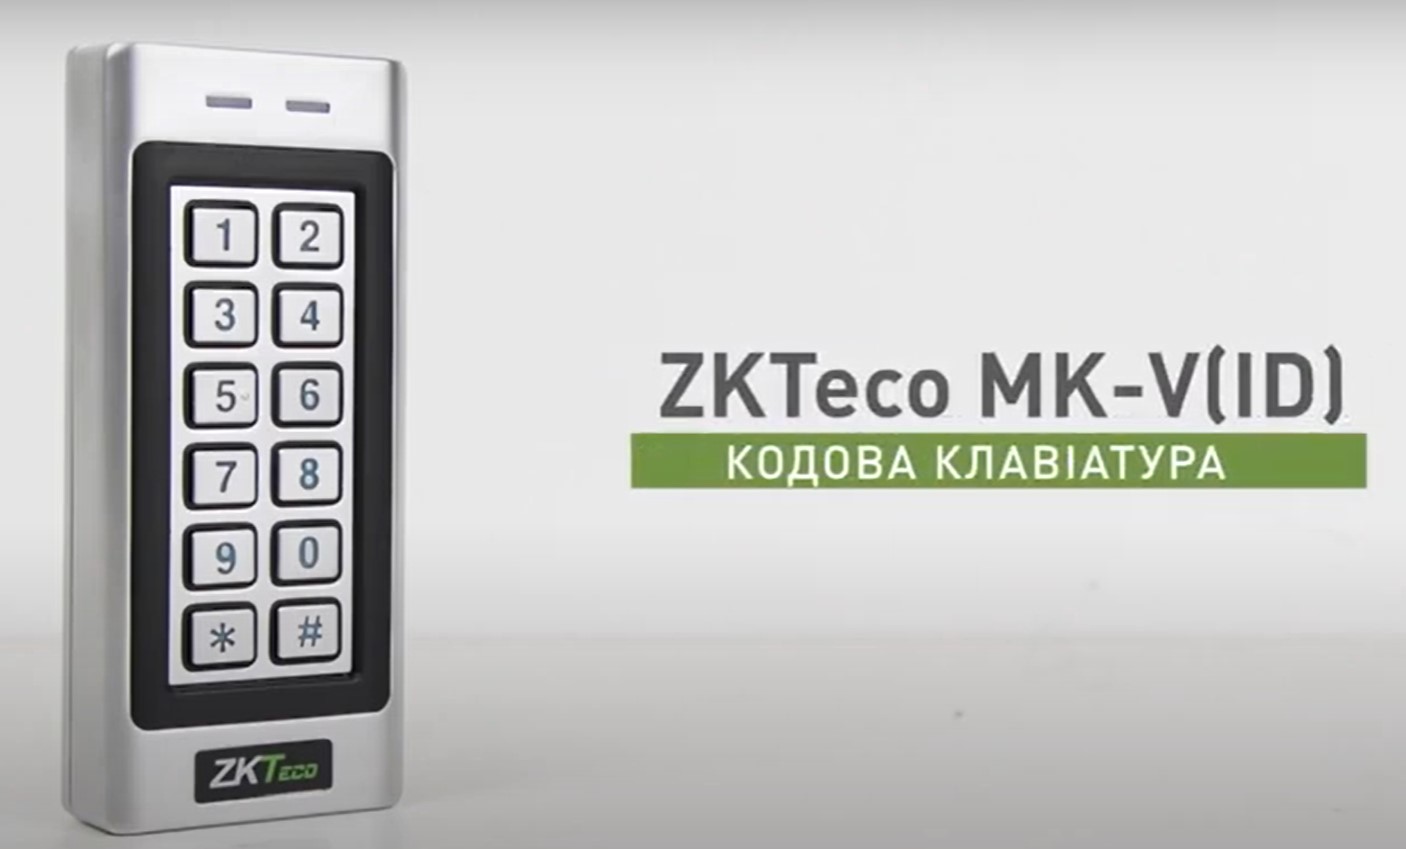 ZKTeco MK-V(ID)